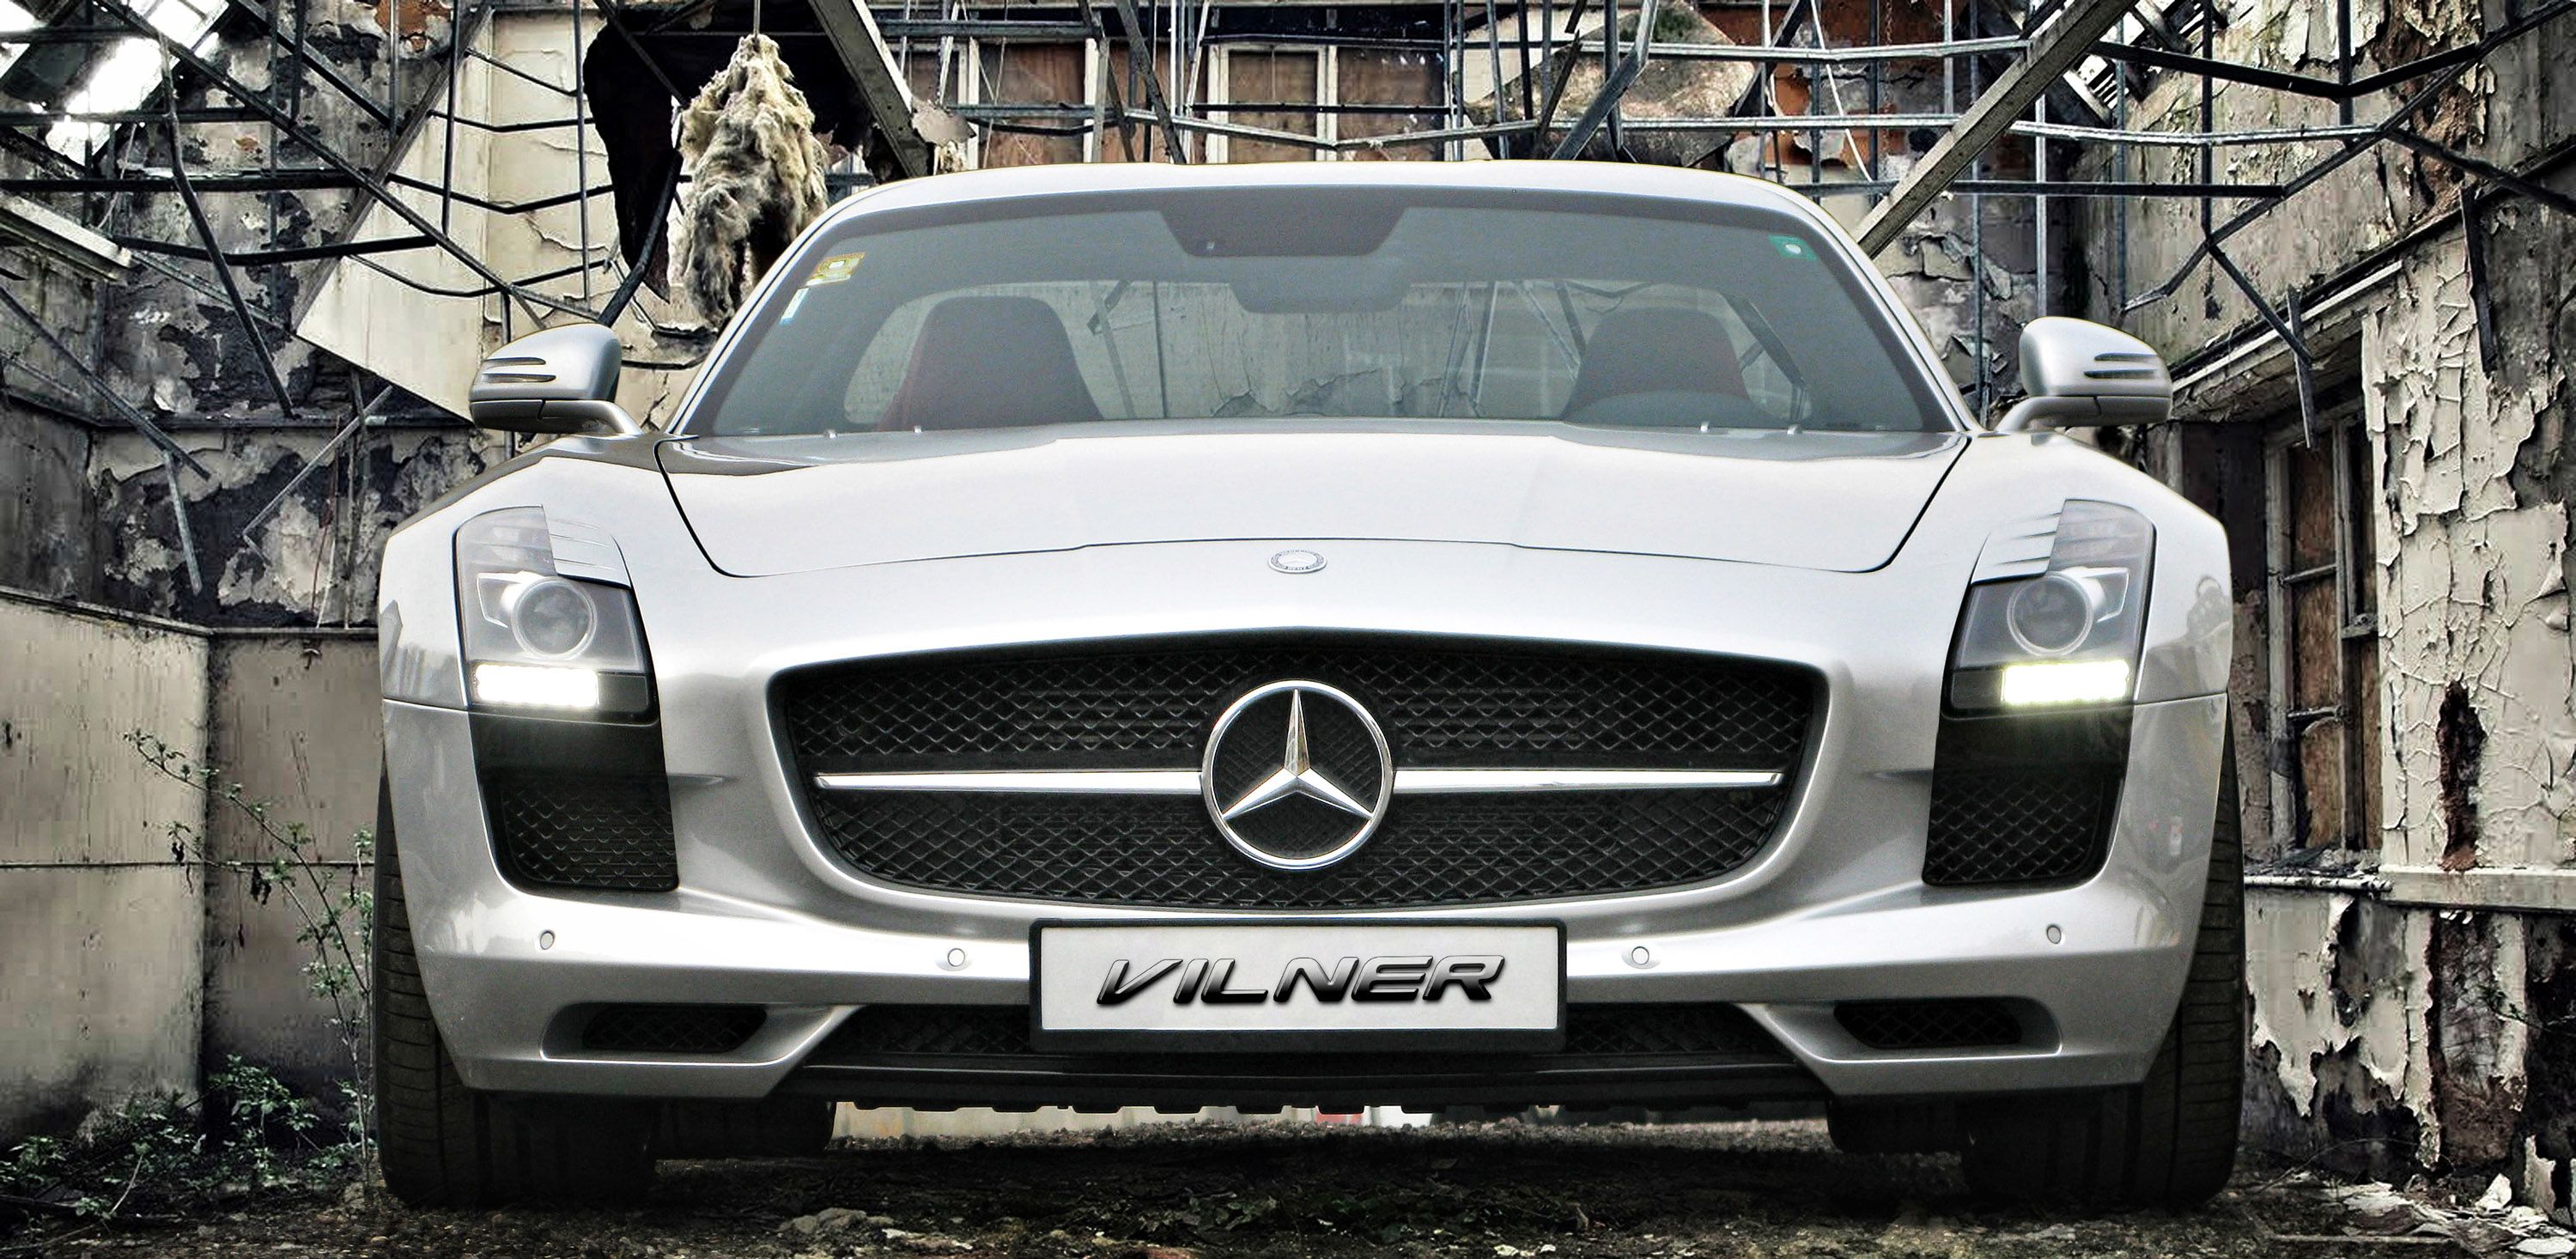 2013 Mercedes SLS AMG by Vilner